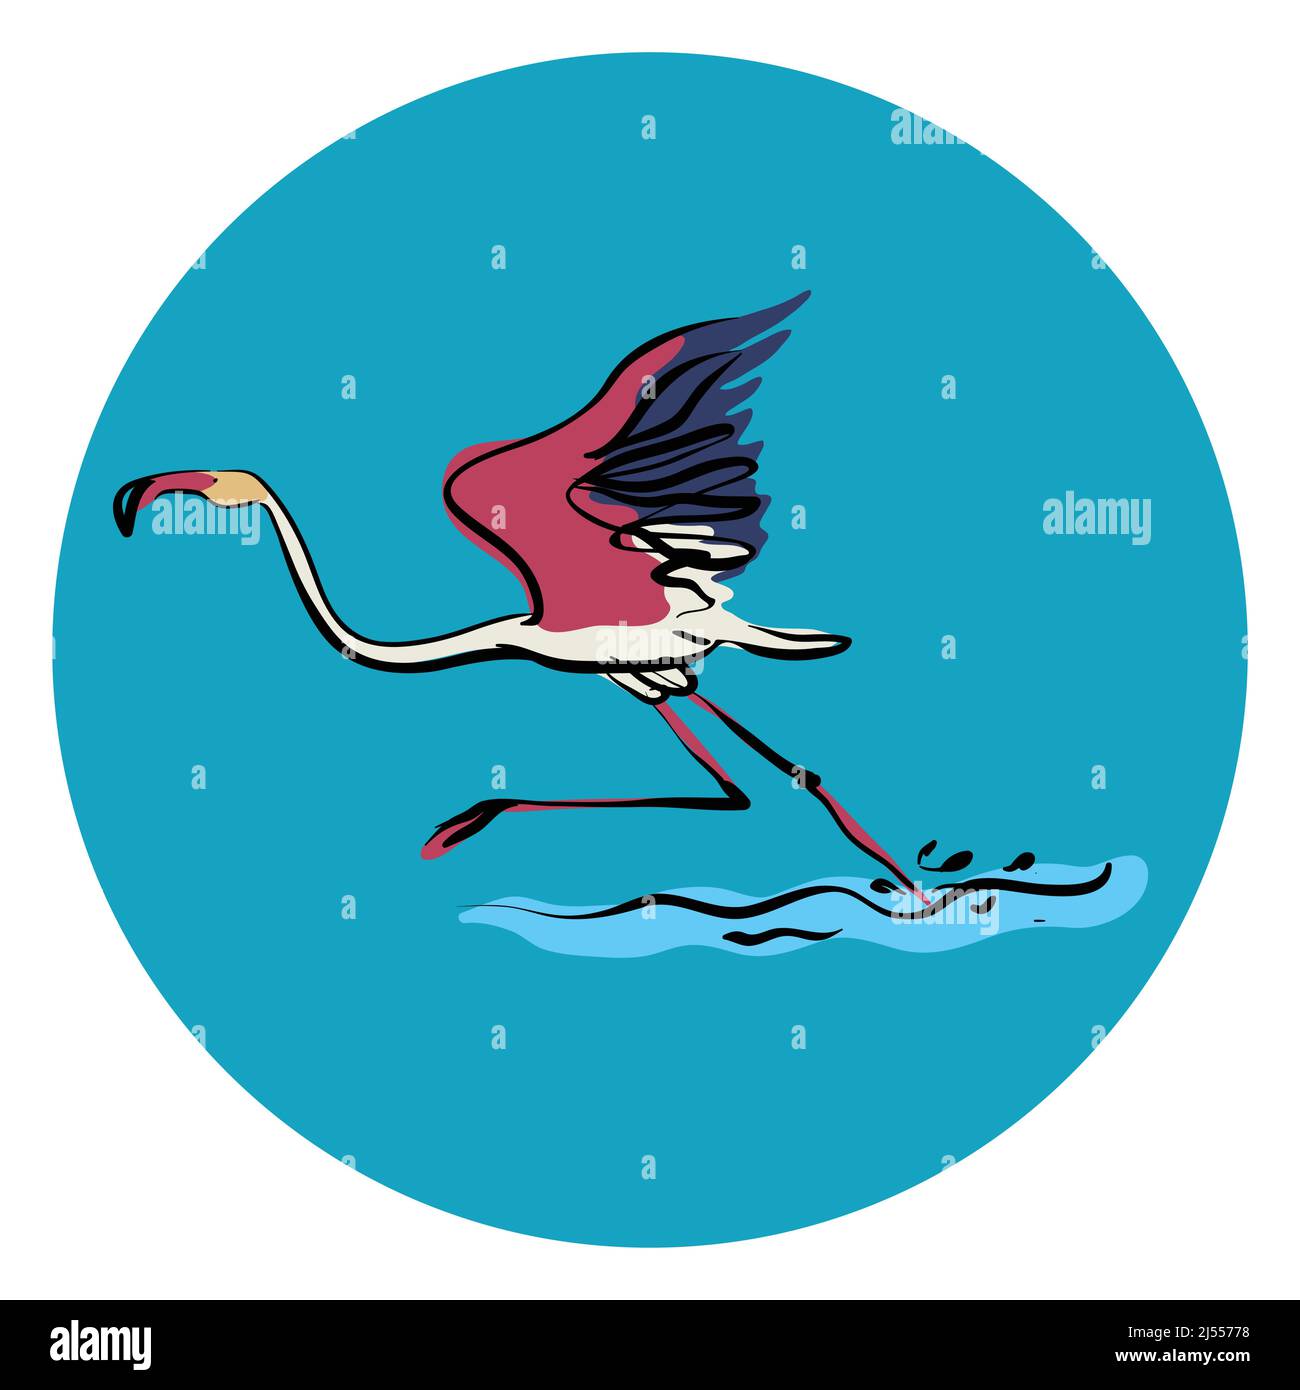 Running Flamingo bird vector illustration Stock Vector